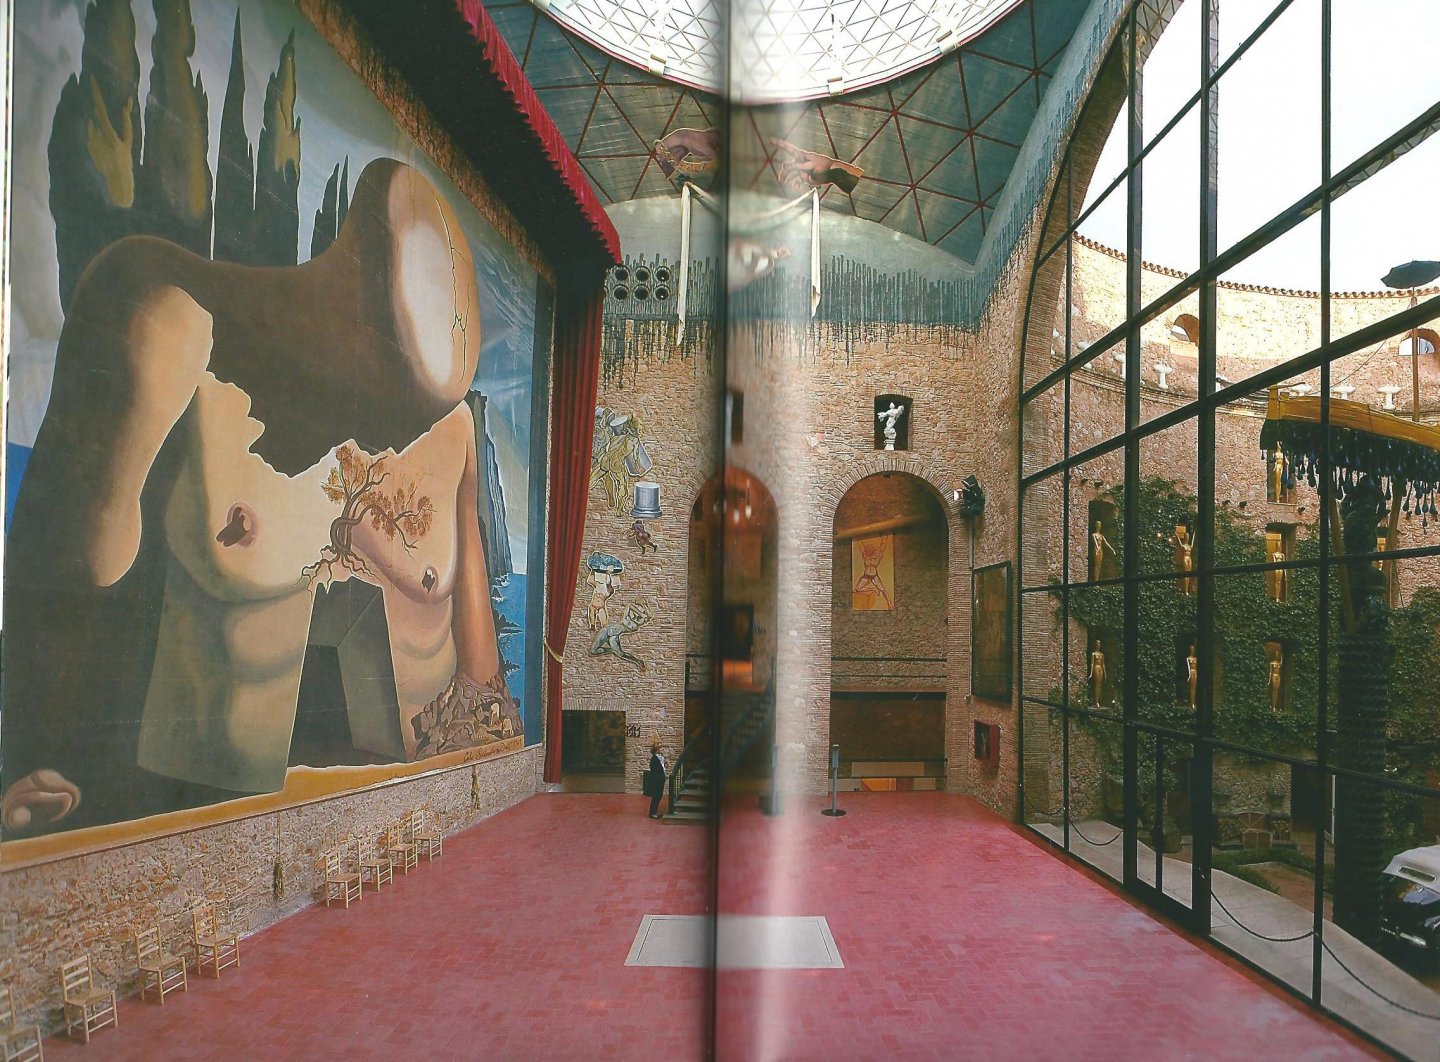 Pitxot, Antoni ... [et al.] - The Dalí Theatre-Museum in Figueres